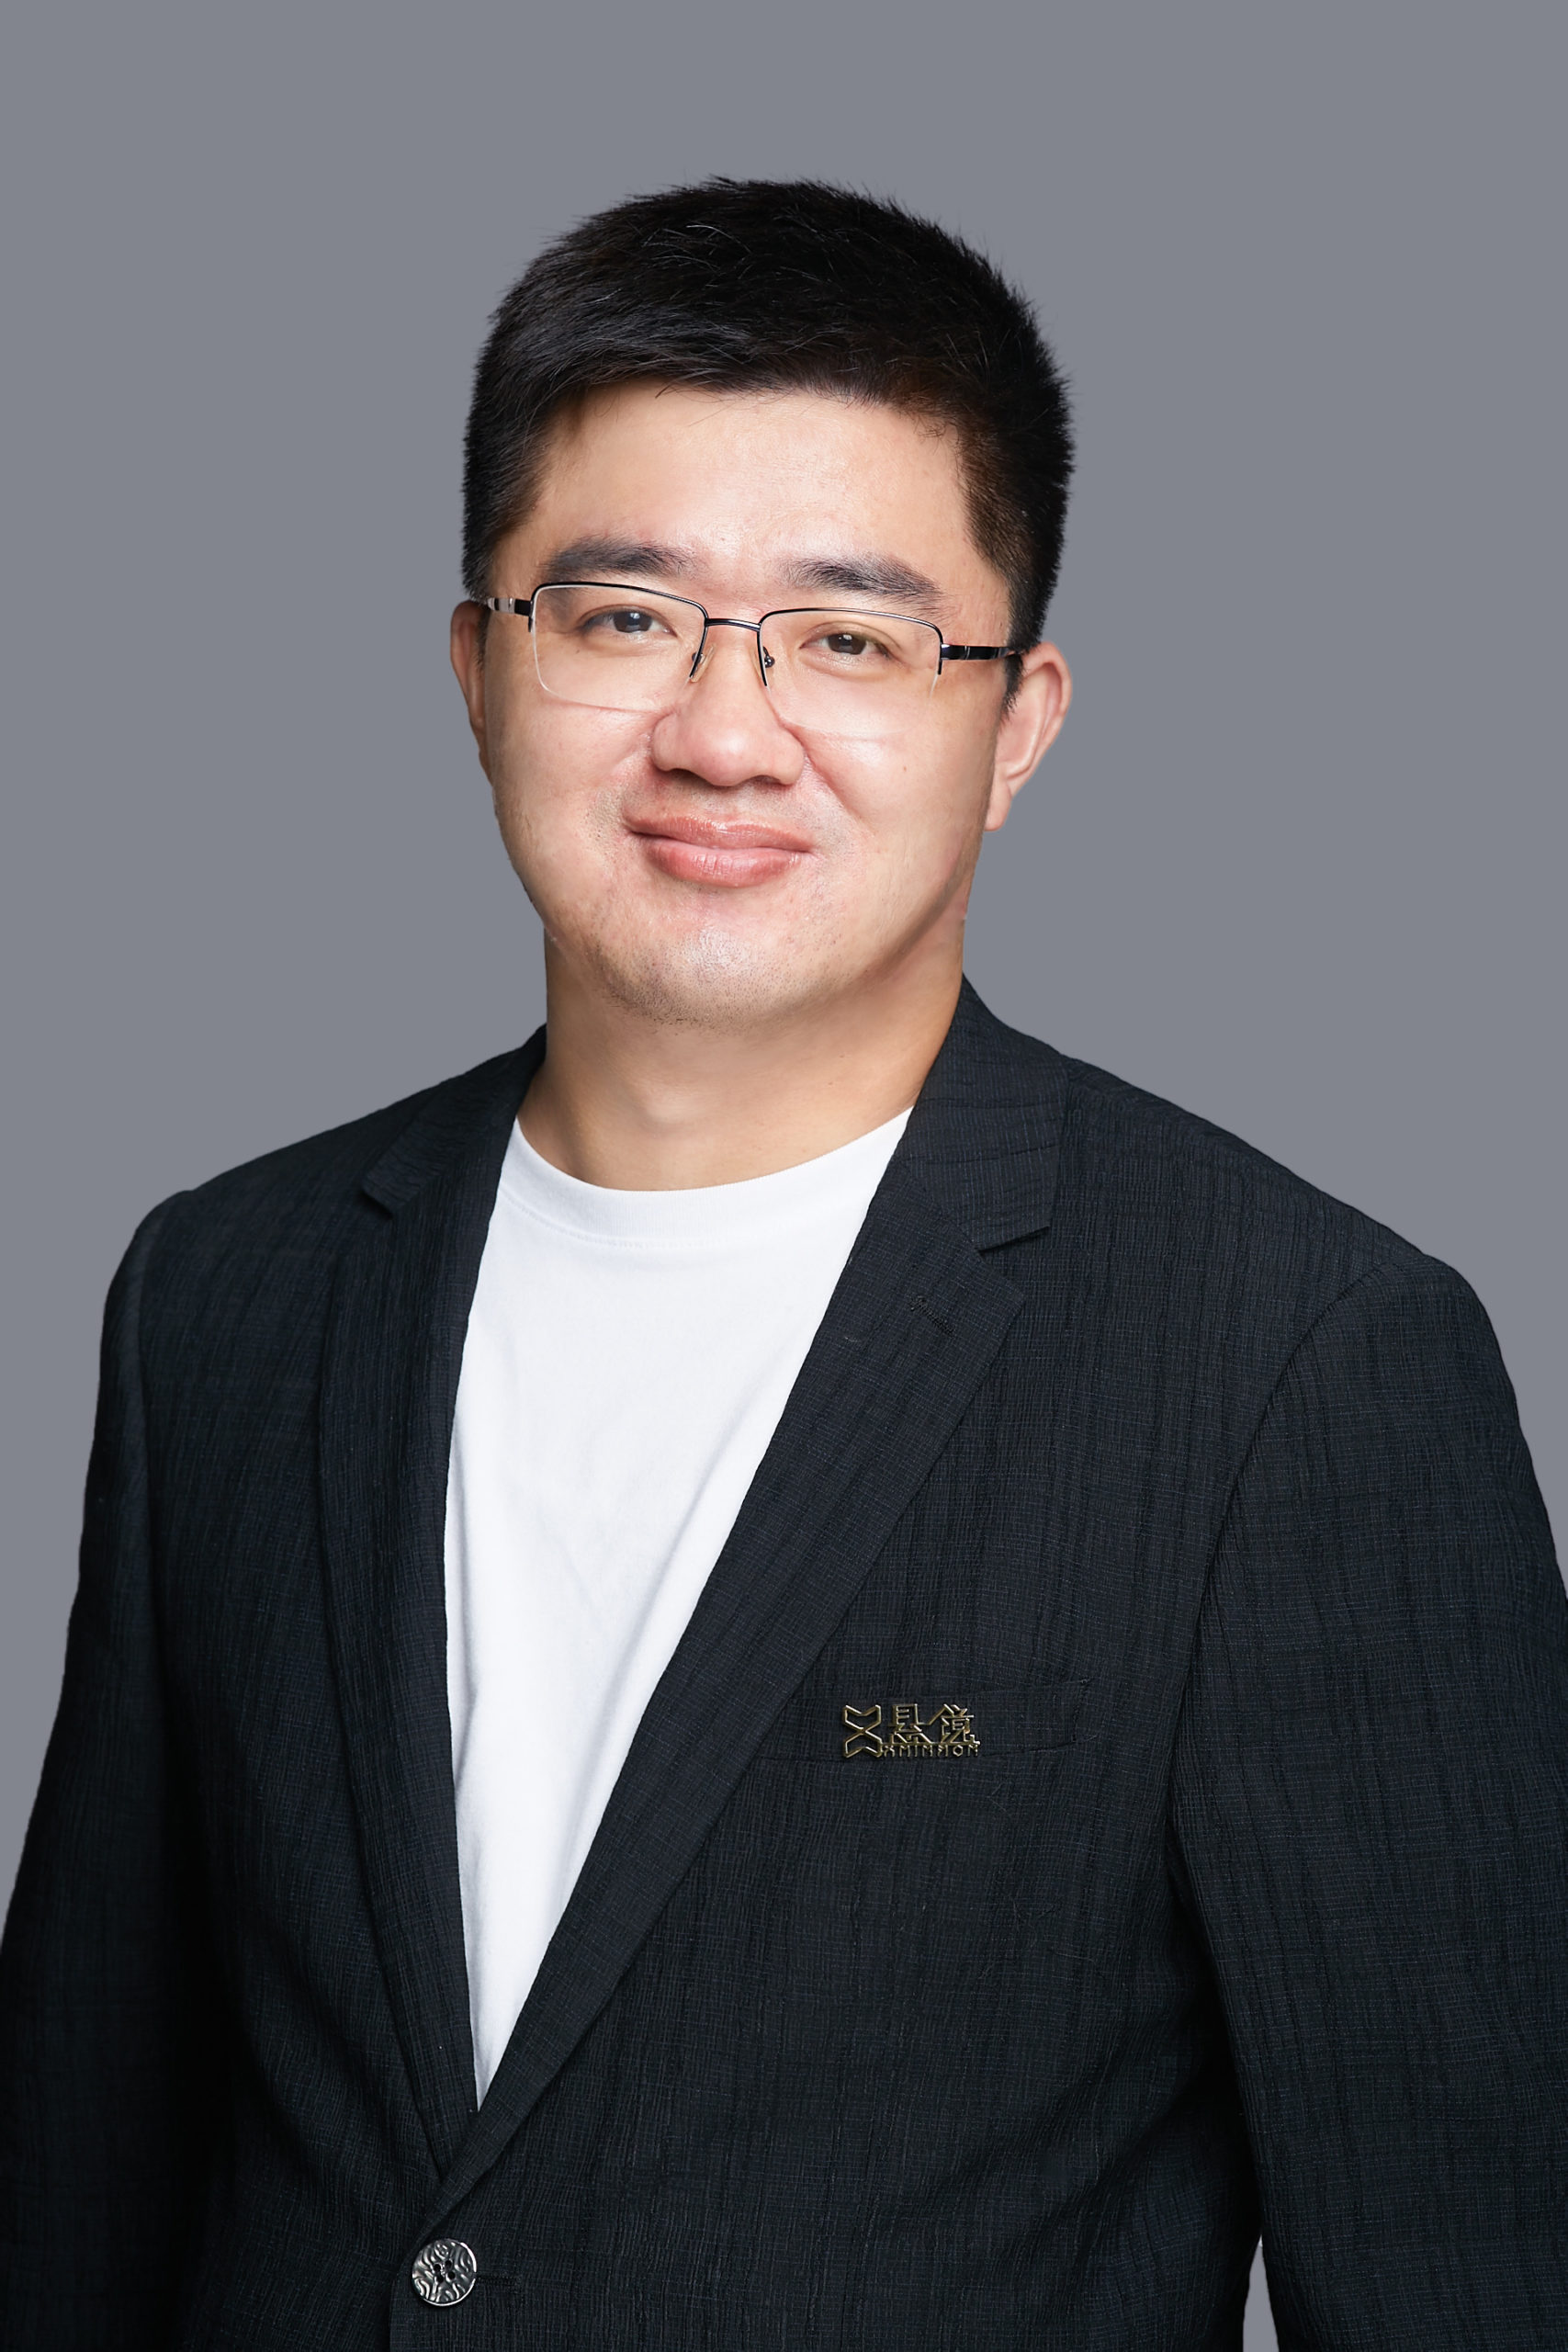 Mr. Zhang Tao